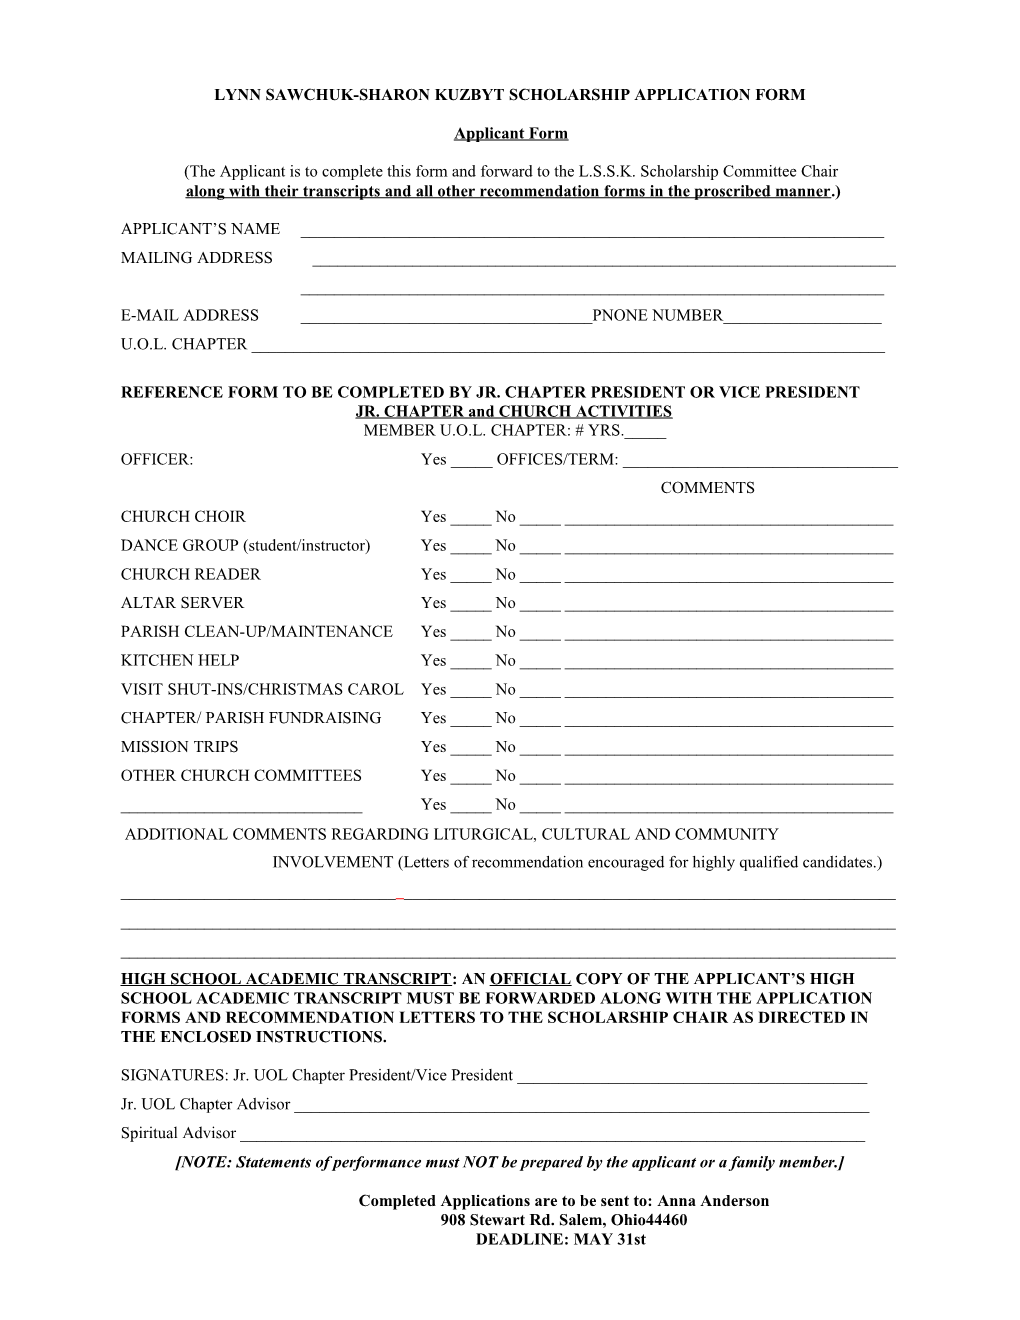 Lynn Sawchuk-Sharon Kuzbyt Scholarship Application Form